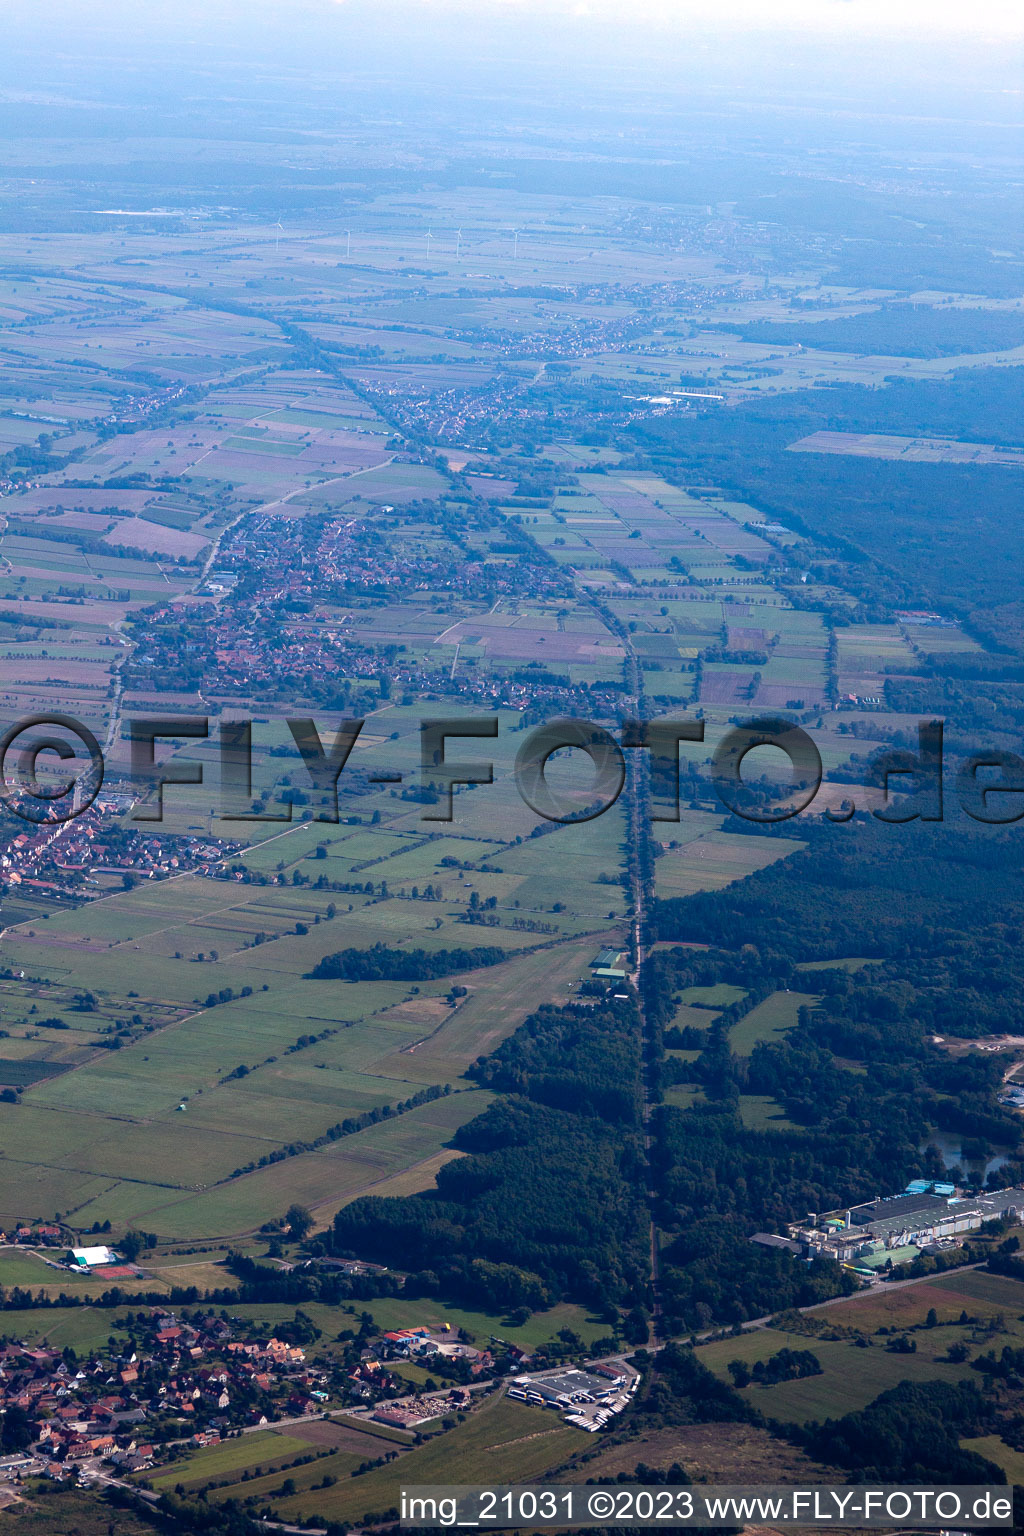 Altenstadt (Elsass) im Bundesland Bas-Rhin, Frankreich aus der Luft betrachtet